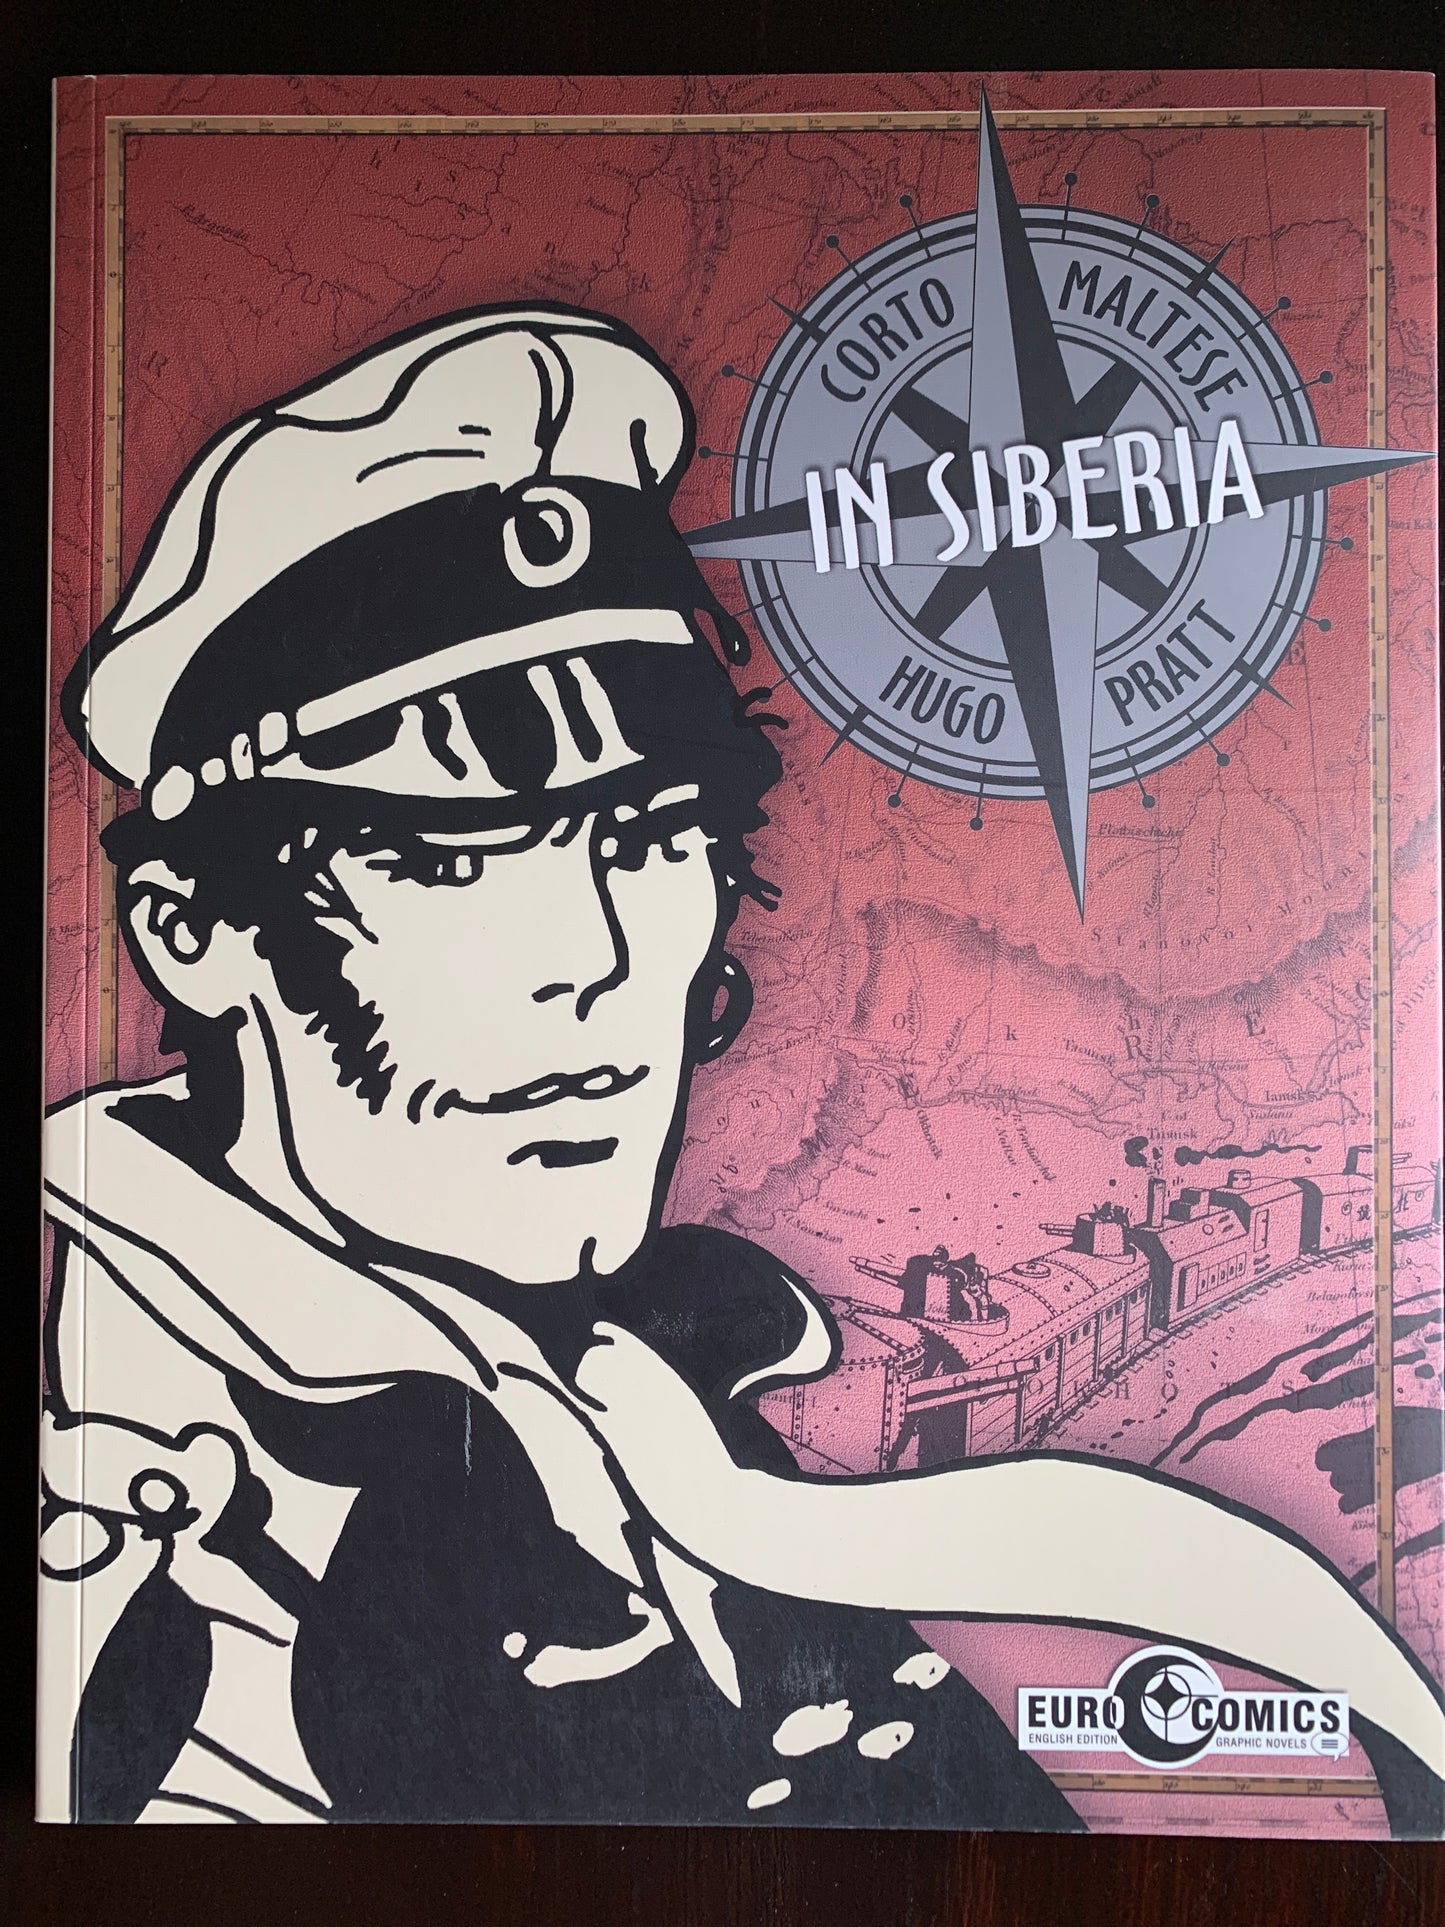 In Siberia: A Corto Maltese graphic novel